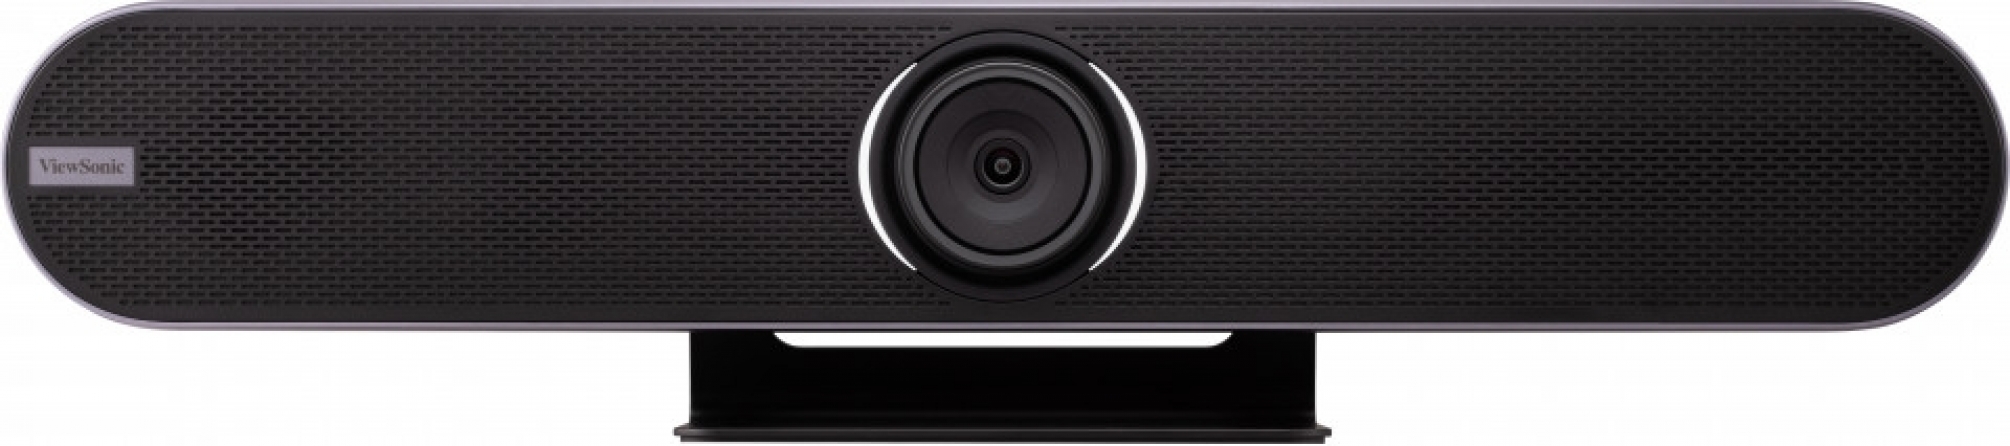 Videocamera professionale per videoconferenze ViewSonic Tribe VB-CAM-201 Ultra HD 4K